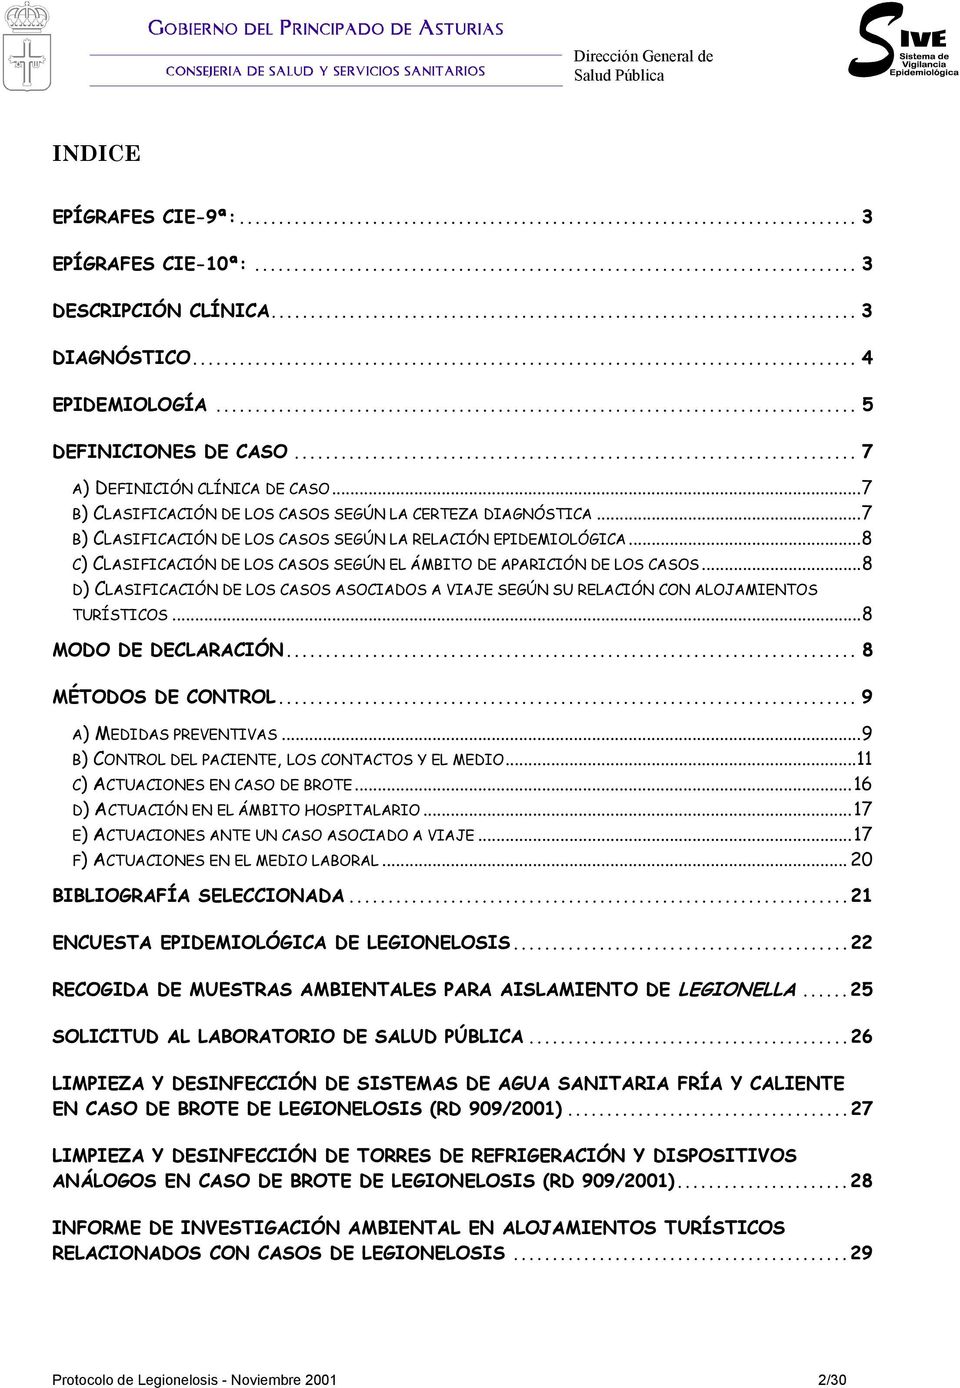 ..8 C) CLASIFICACIÓN DE LOS CASOS SEGÚN EL ÁMBITO DE APARICIÓN DE LOS CASOS...8 D) CLASIFICACIÓN DE LOS CASOS ASOCIADOS A VIAJE SEGÚN SU RELACIÓN CON ALOJAMIENTOS TURÍSTICOS...8 MODO DE DECLARACIÓN.